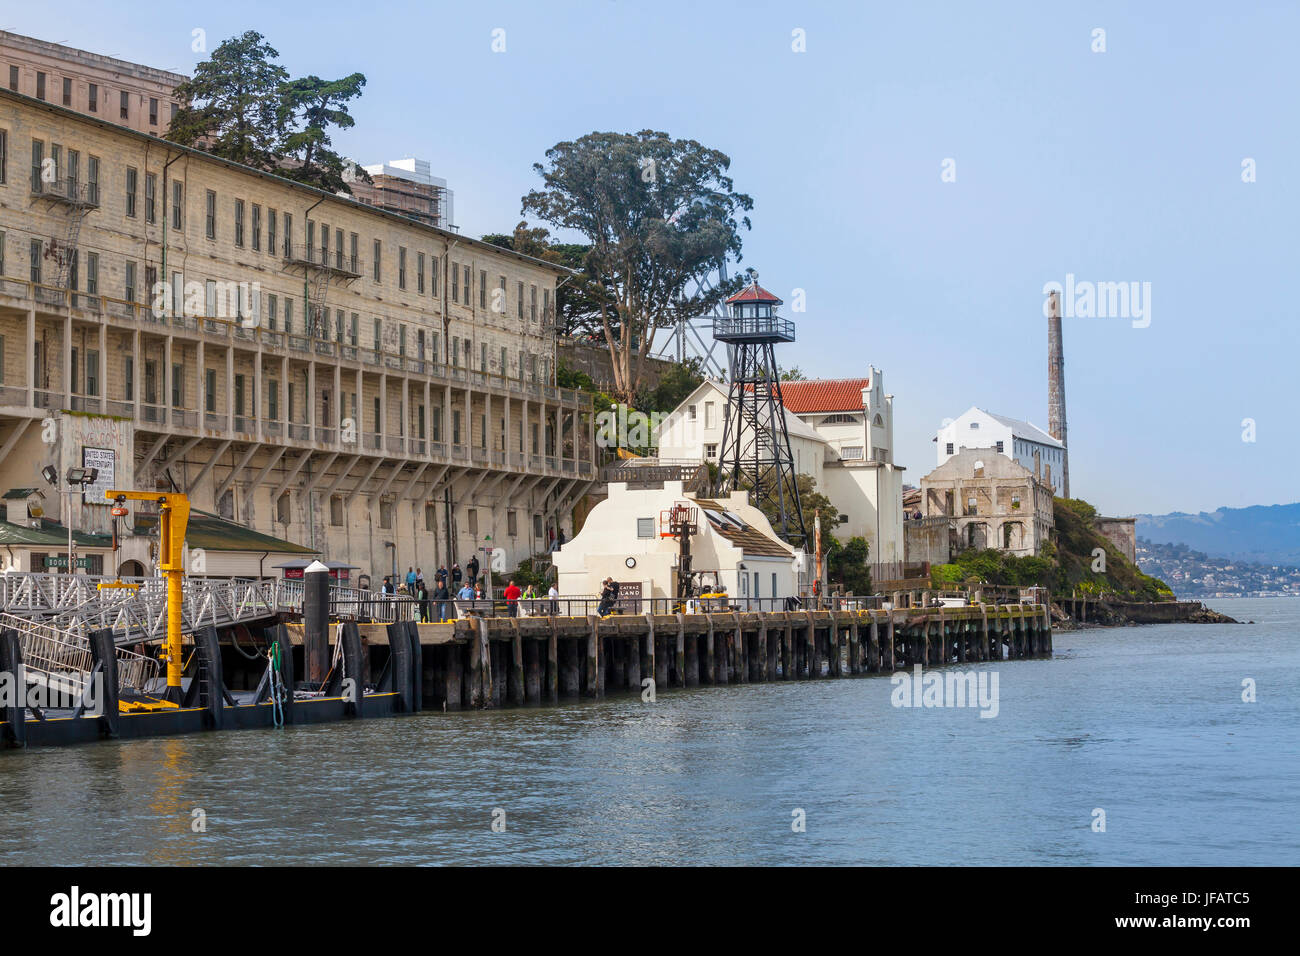 Le pénitencier d'Alcatraz, San Francisco, California, USA Banque D'Images